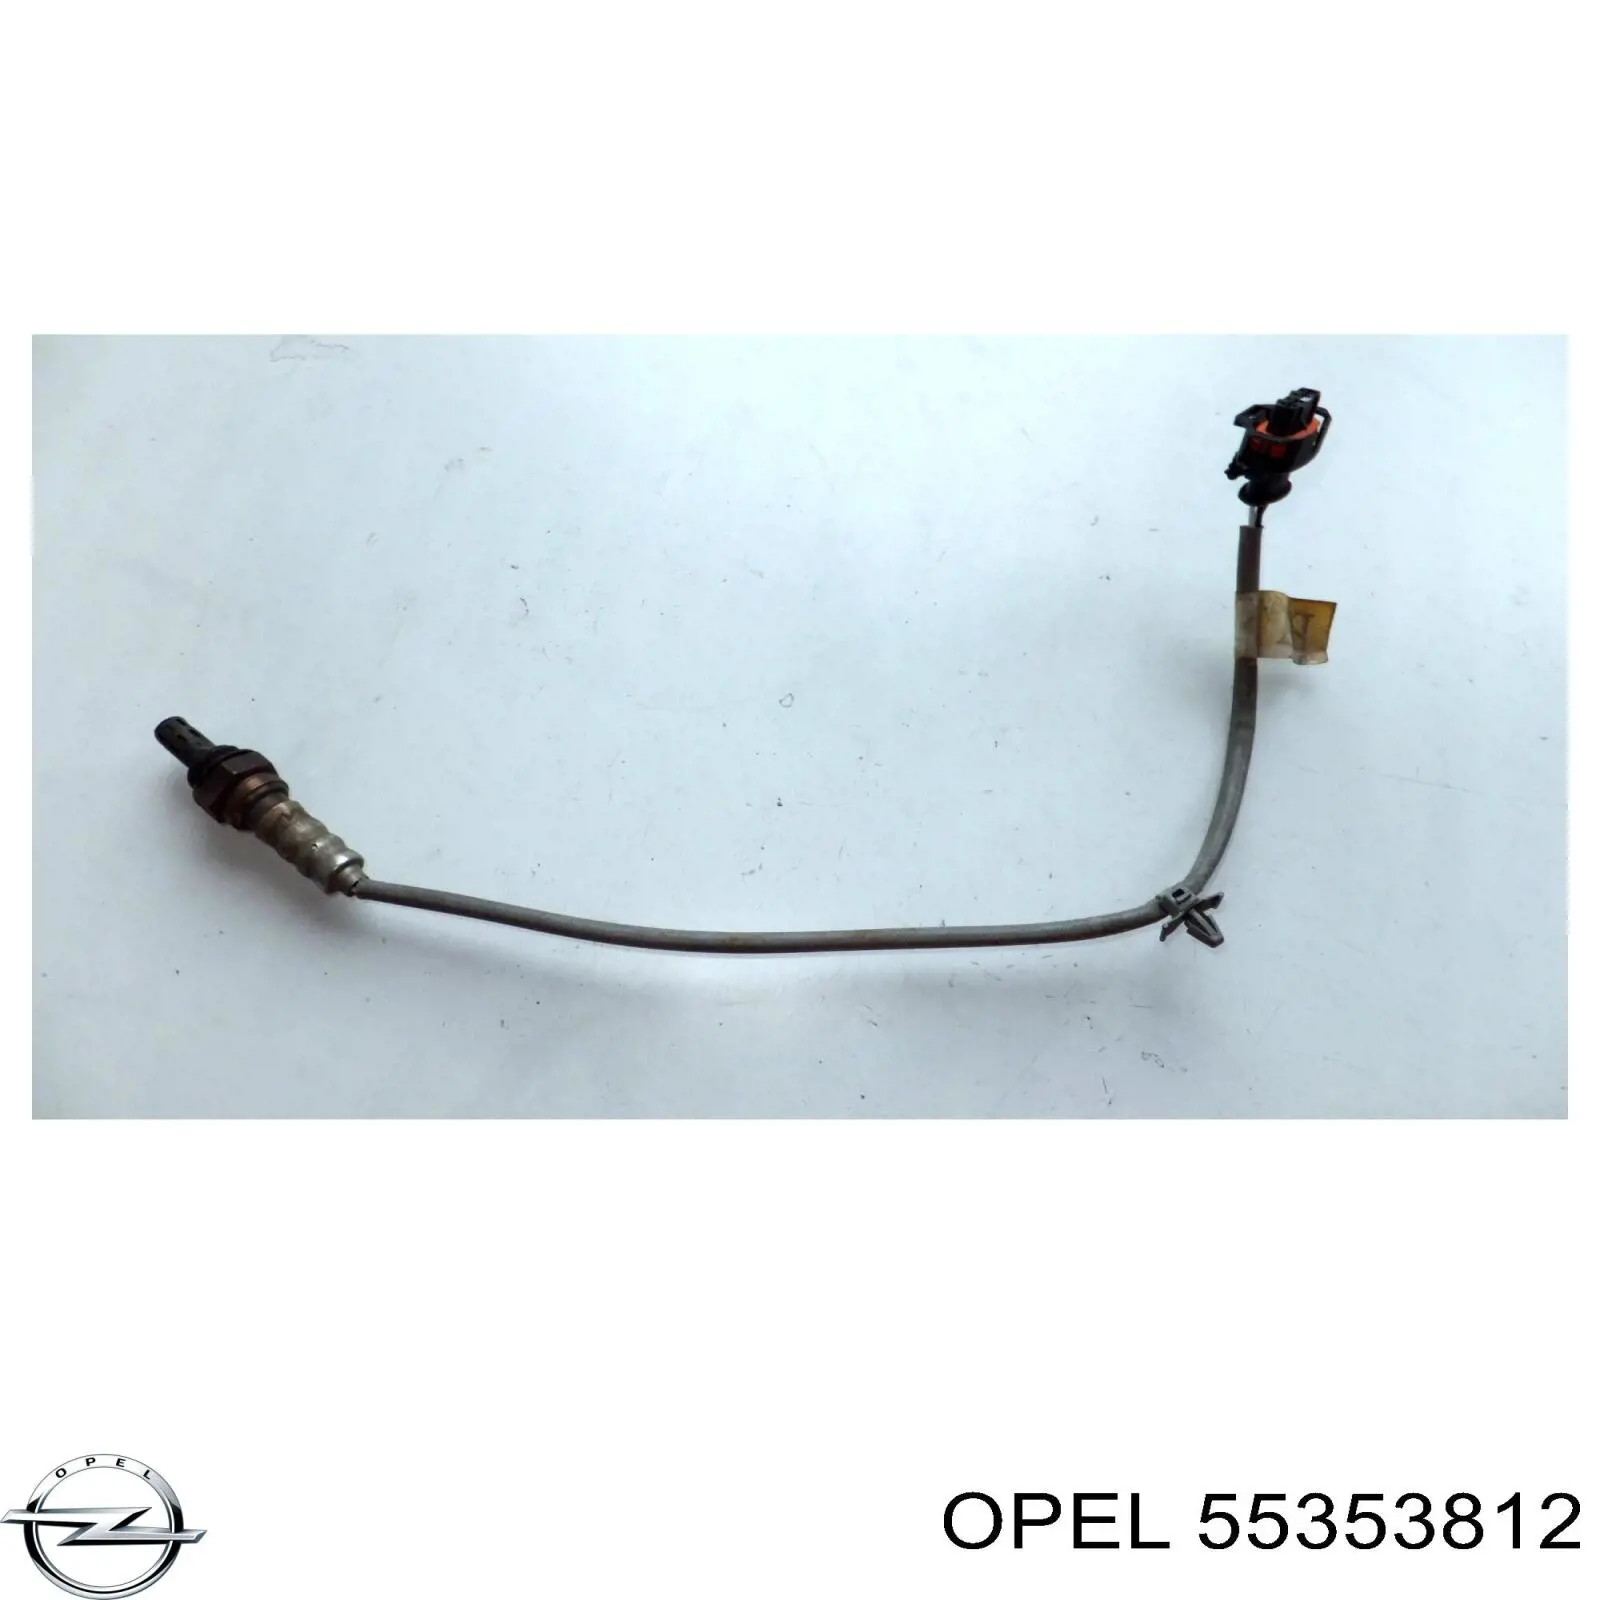 55353812 Opel sonda lambda sensor de oxigeno post catalizador